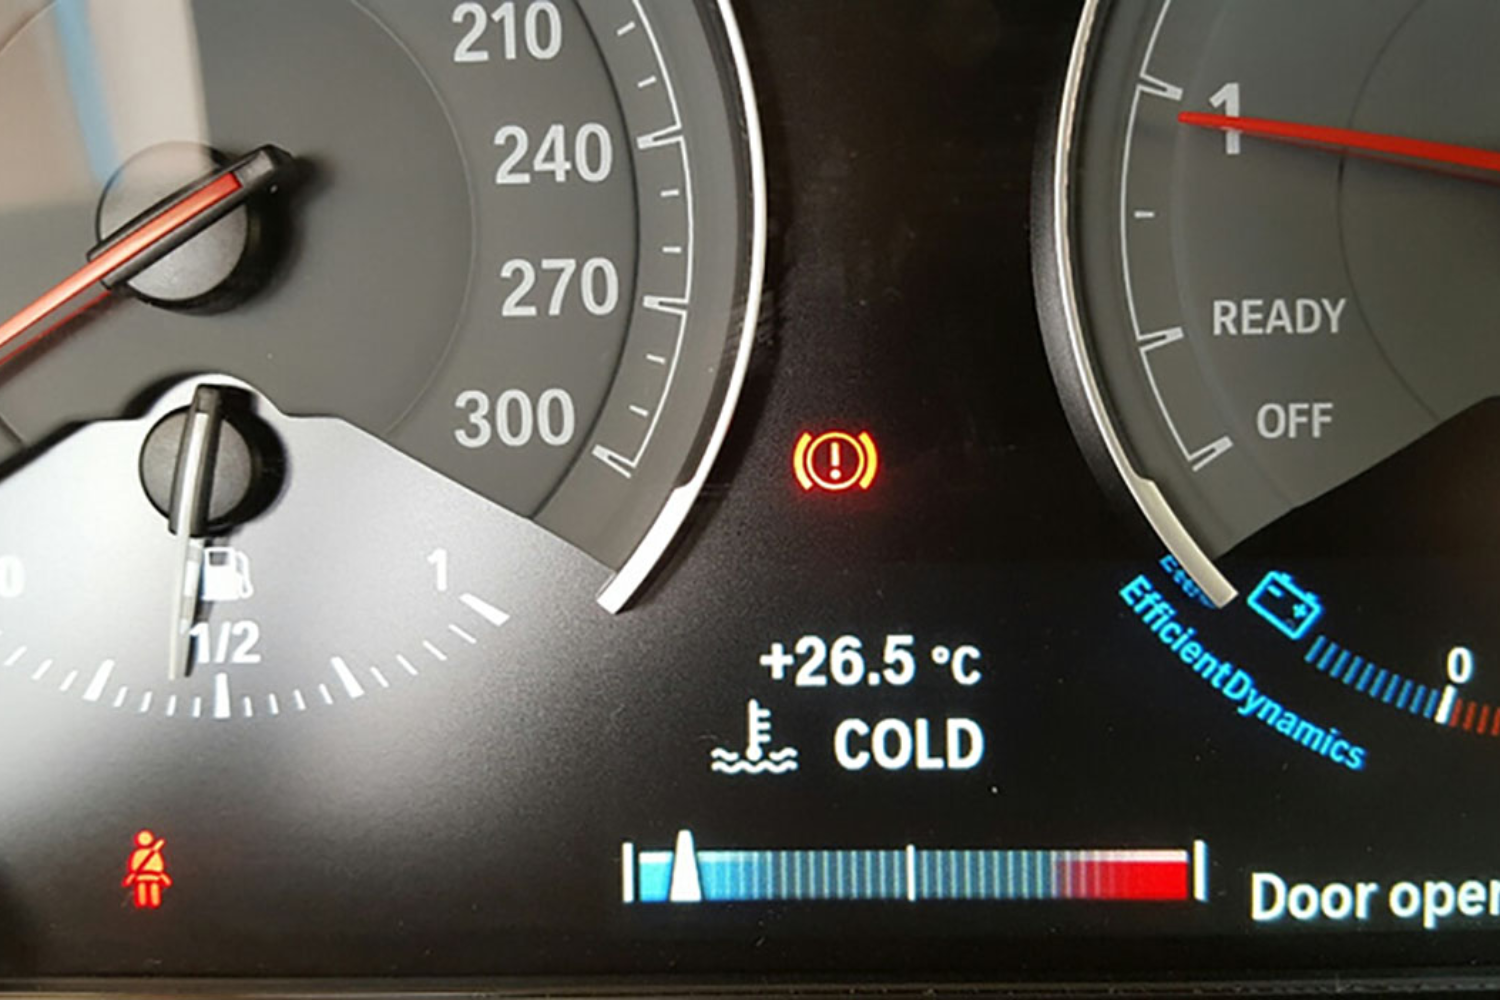 Температура масла бмв. Рабочая температура двигателя БМВ ф10. Рабочая температура двигателя BMW f10 520i. Шкала температуры двигателя БМВ 318i 2010. Нормальная температура двигателя БМВ ф10.